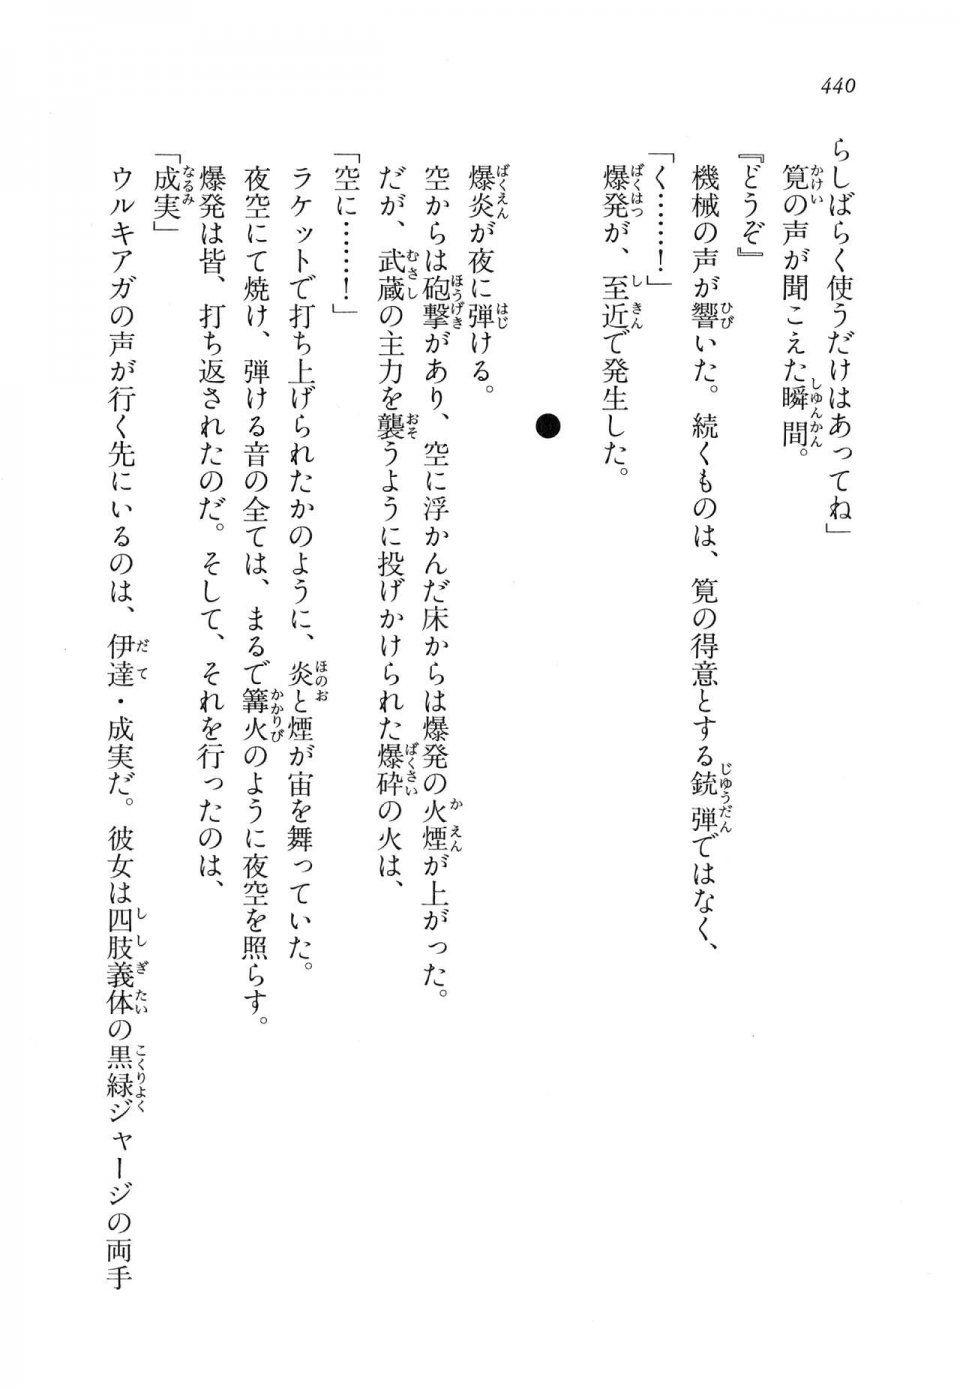 Kyoukai Senjou no Horizon LN Vol 11(5A) - Photo #440